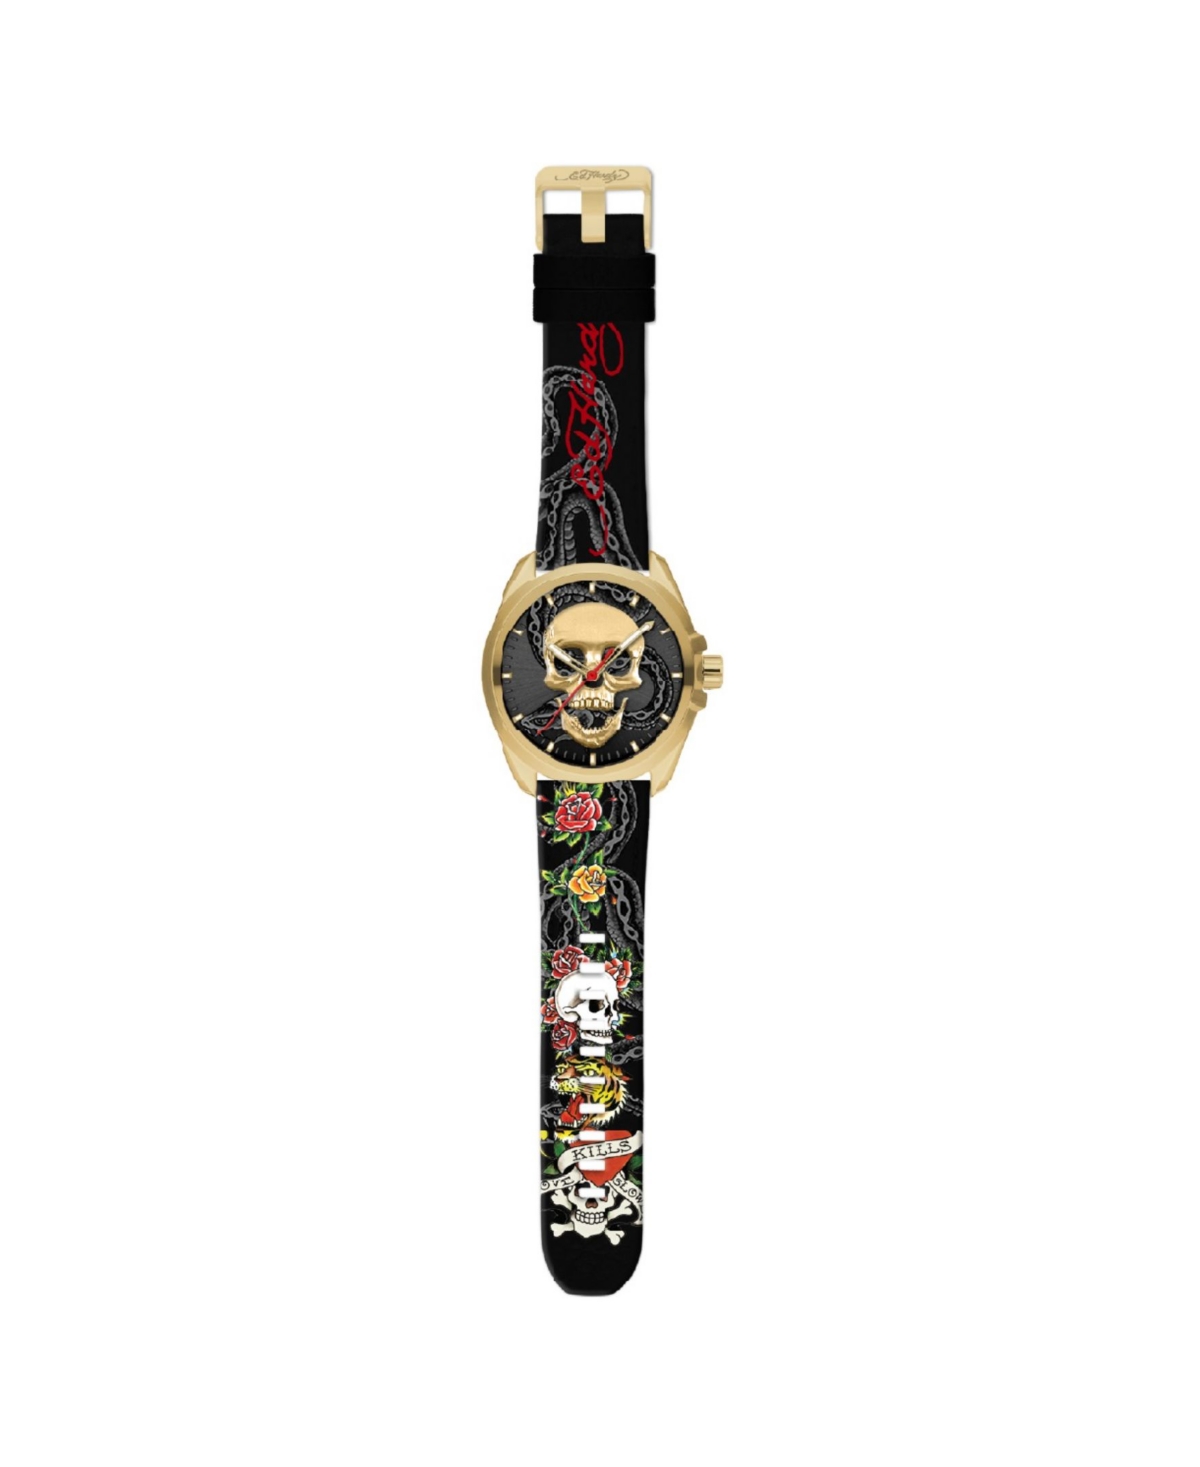 Men's Matte Black Silicone Strap Watch 46mm - Gold-Tone, Multicolor Print